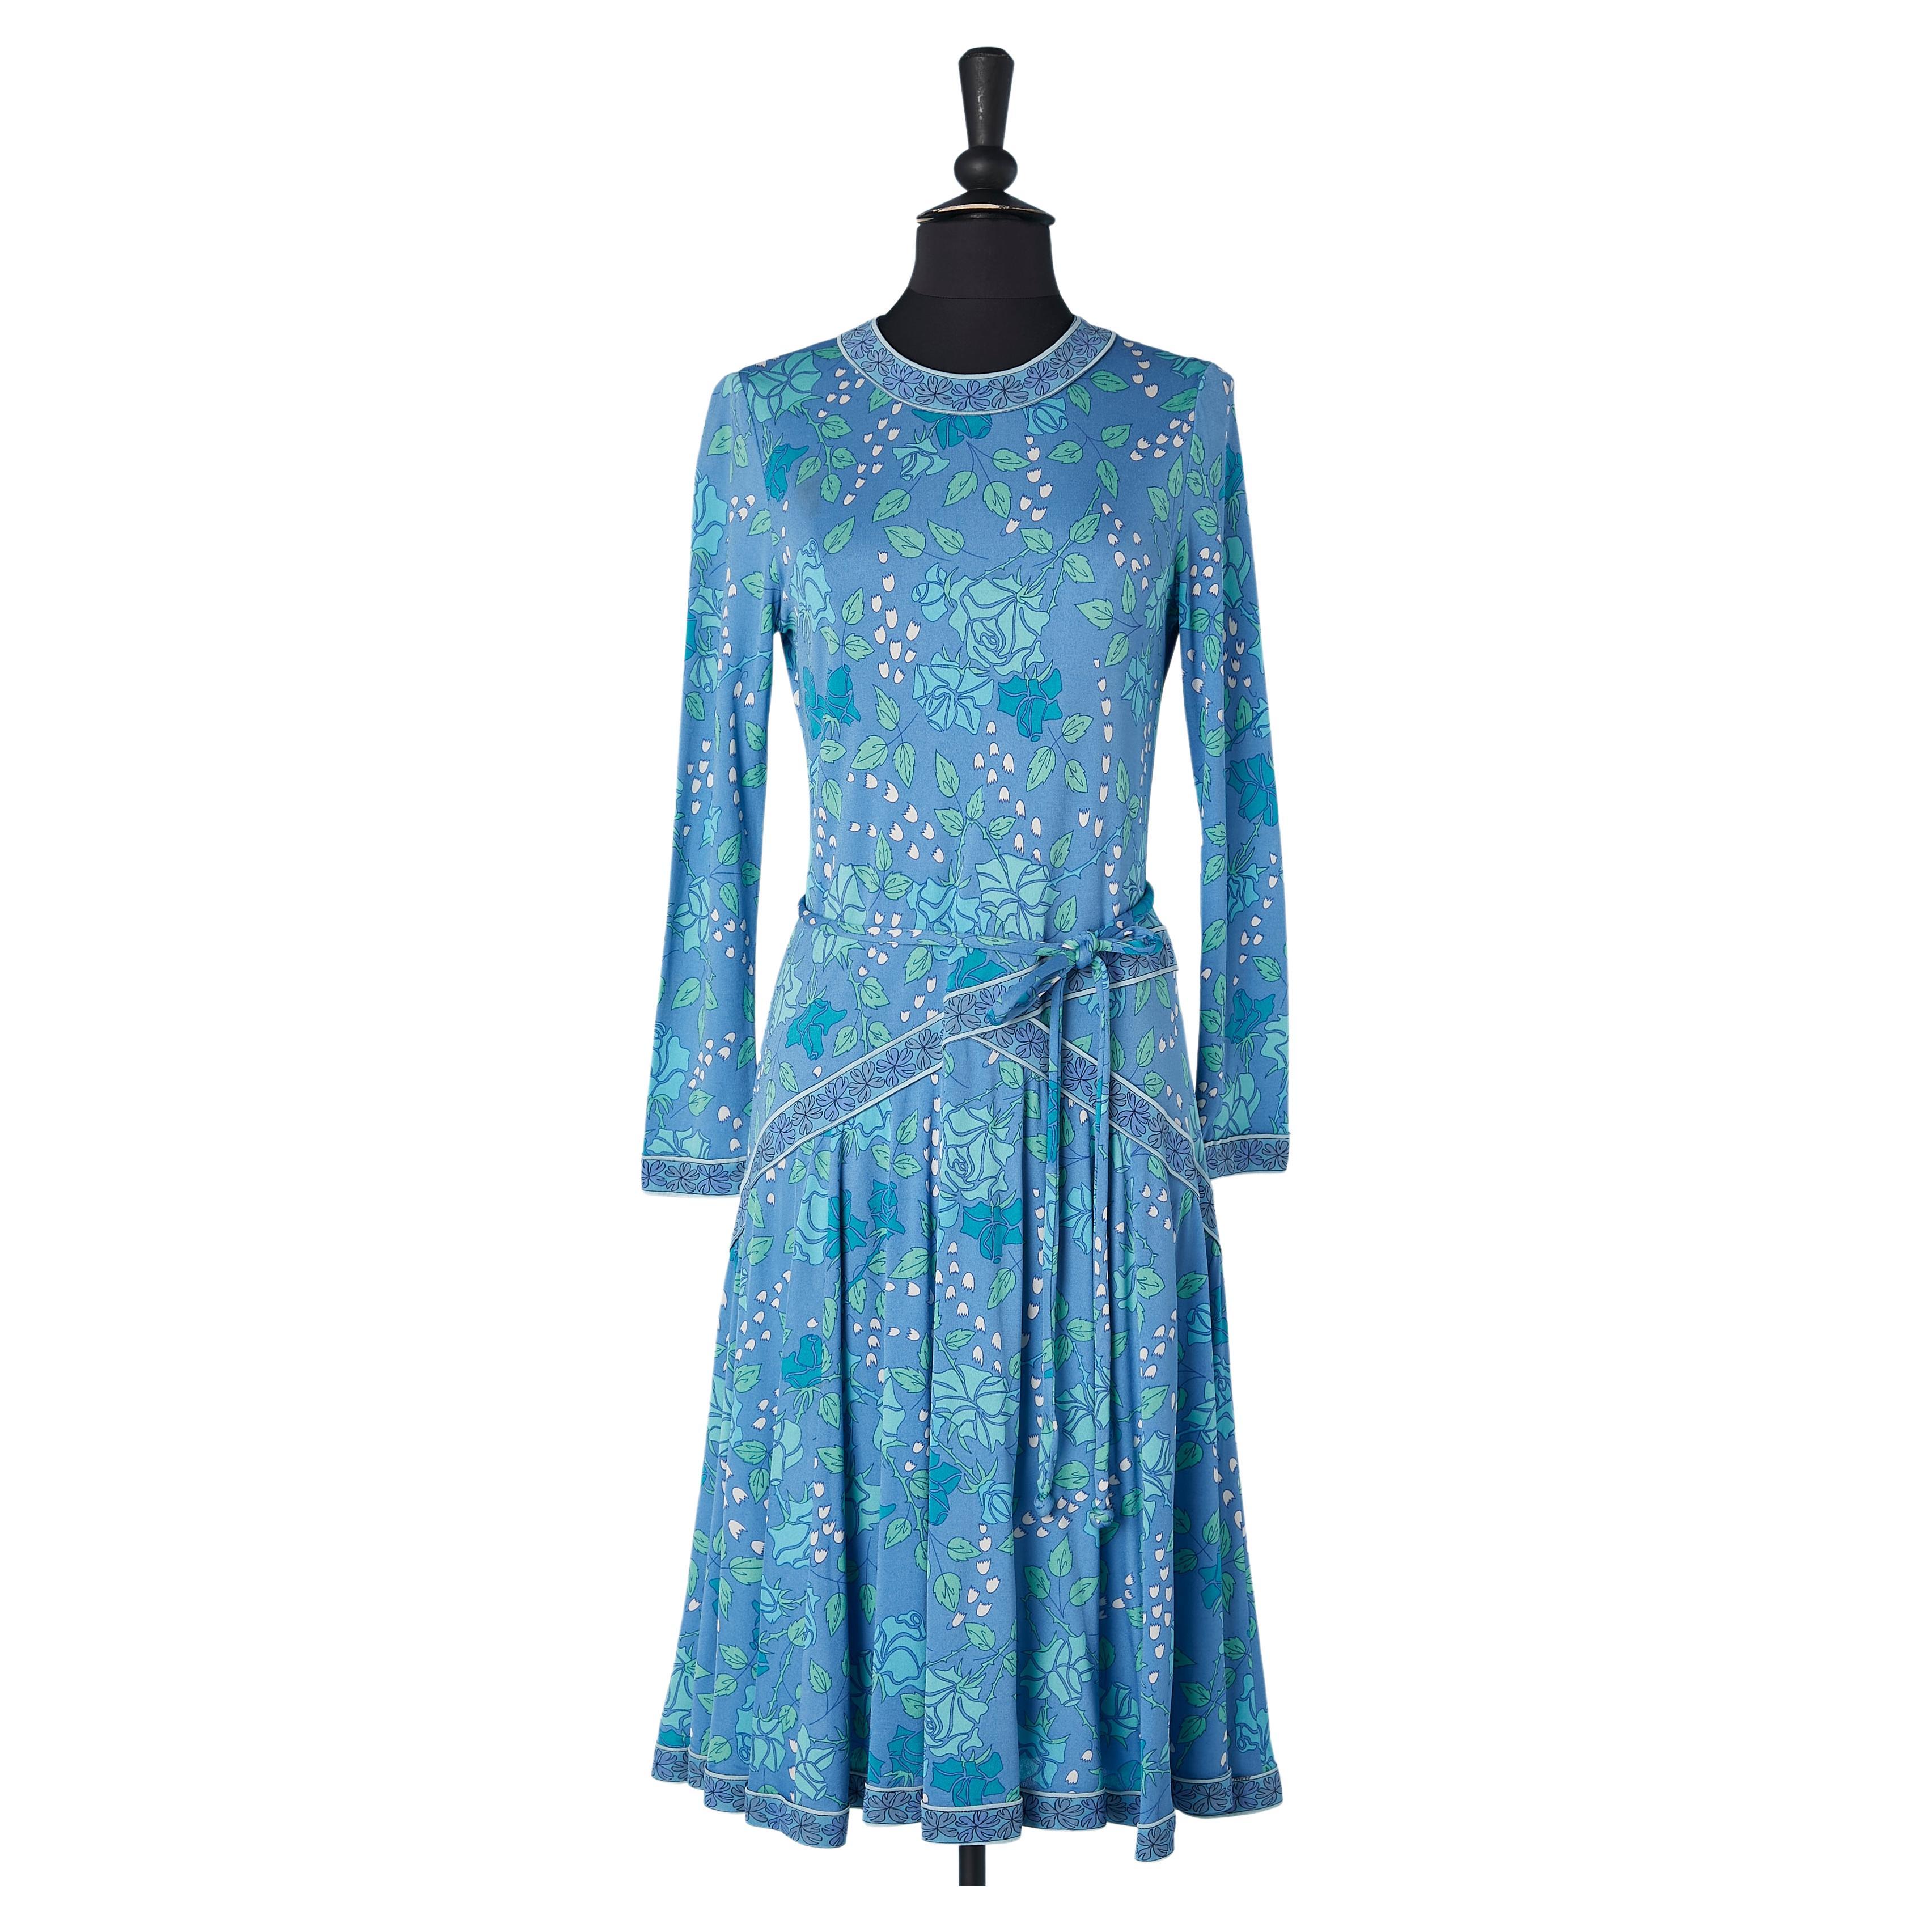 Bedrucktes Kleid aus Seidenjersey in Rosa und Lilien-of-the-valley, Bessi, ca. 1960er Jahre 